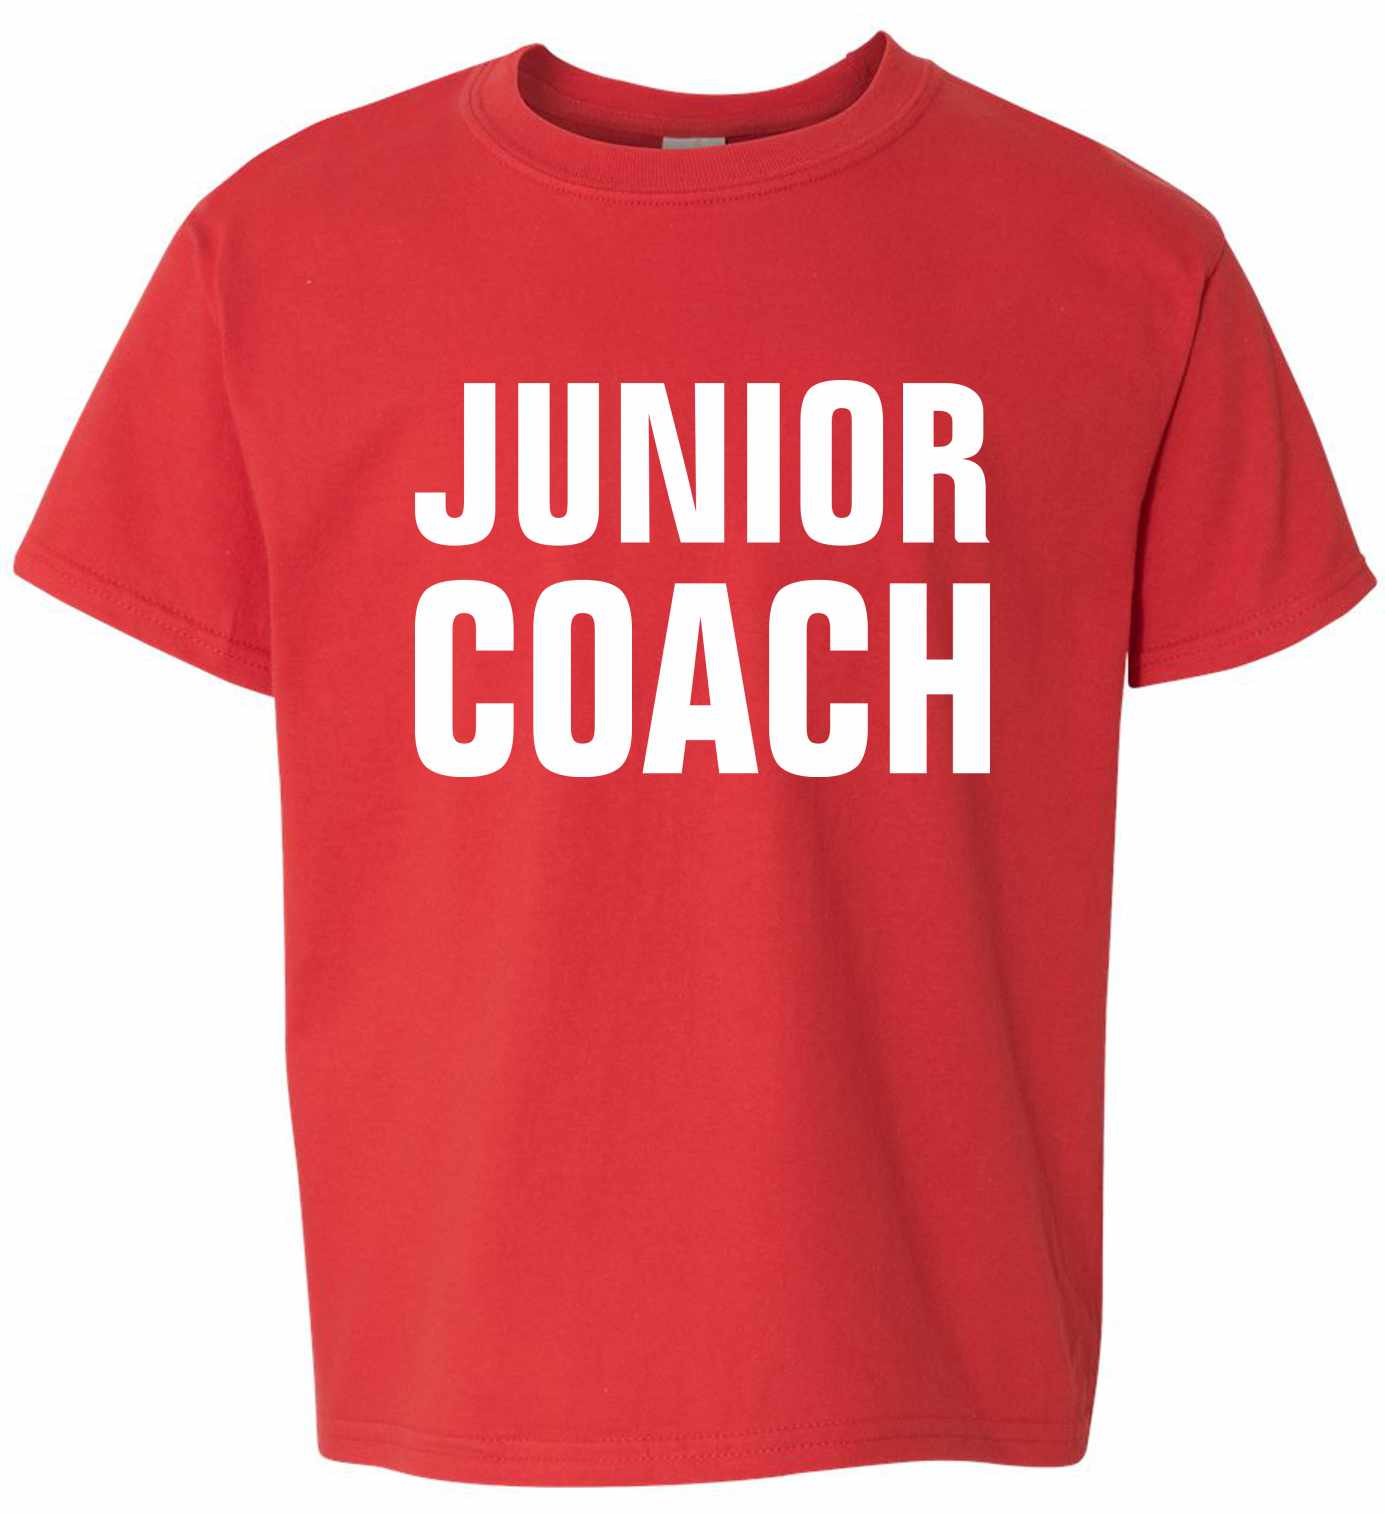 Junior Coach on Kids T-Shirt